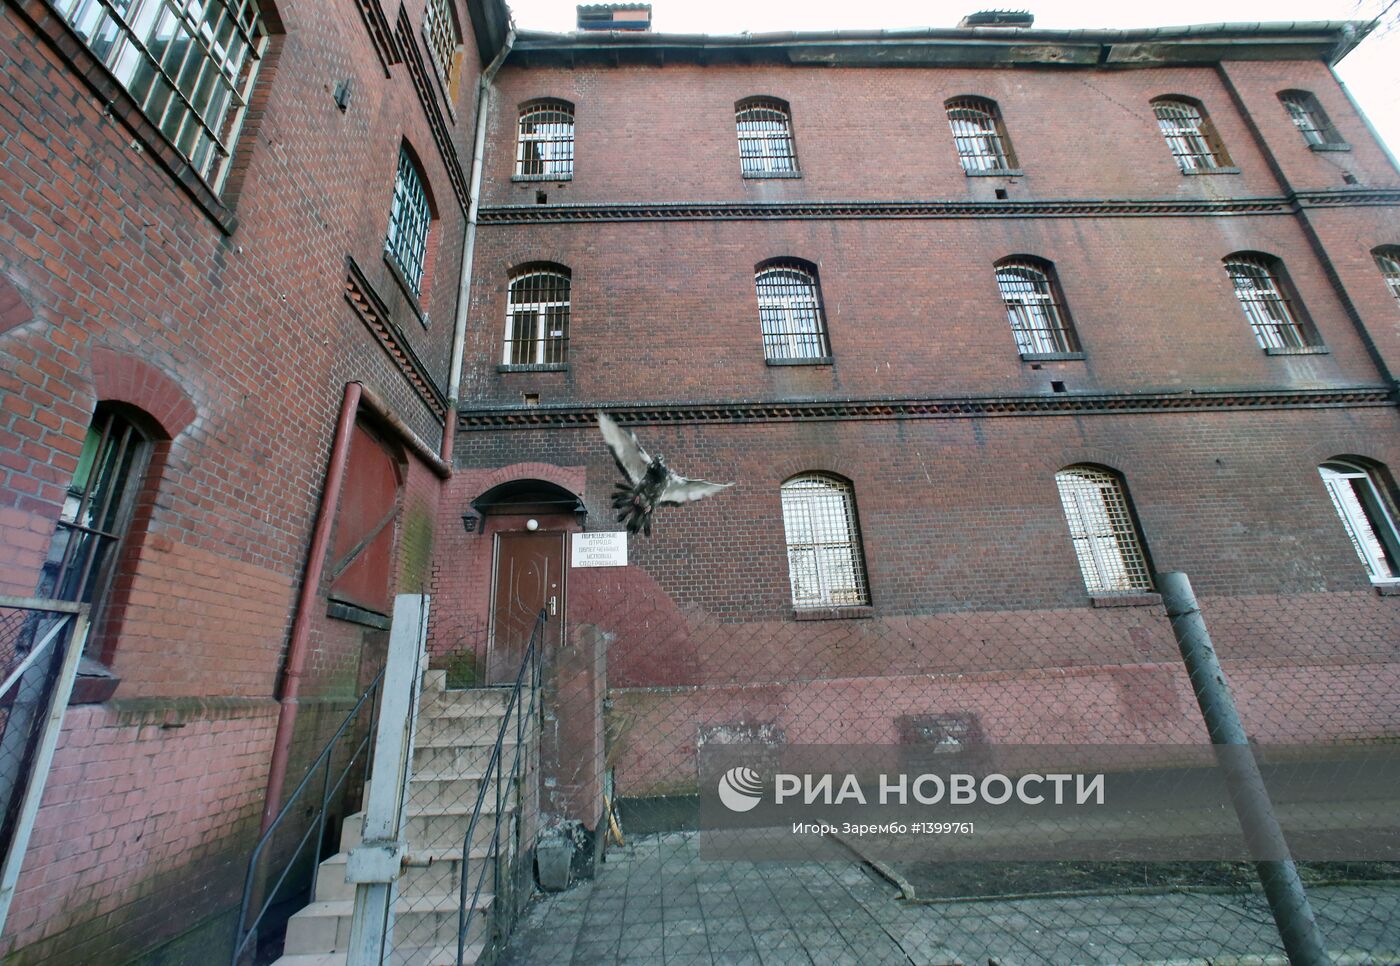 Тюрьма в замке Тапиау в Калининградской области